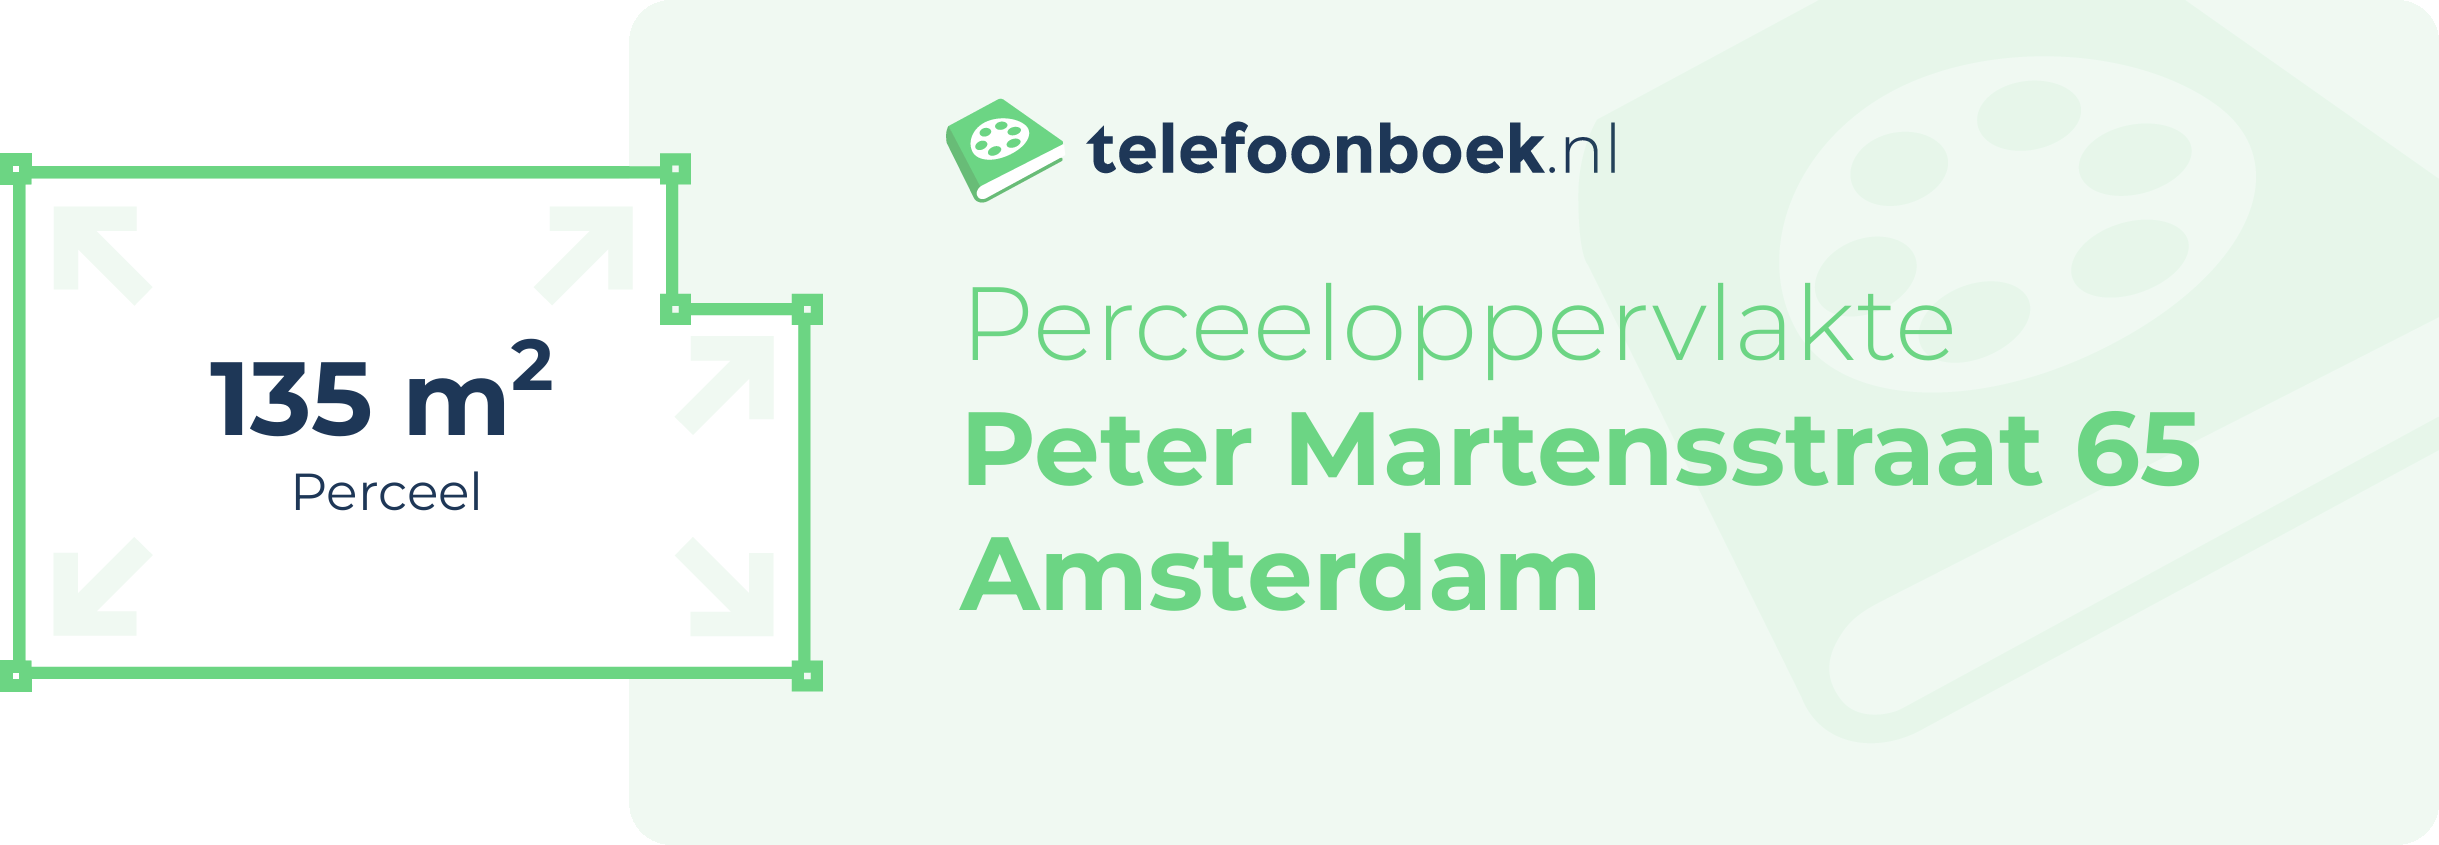 Perceeloppervlakte Peter Martensstraat 65 Amsterdam